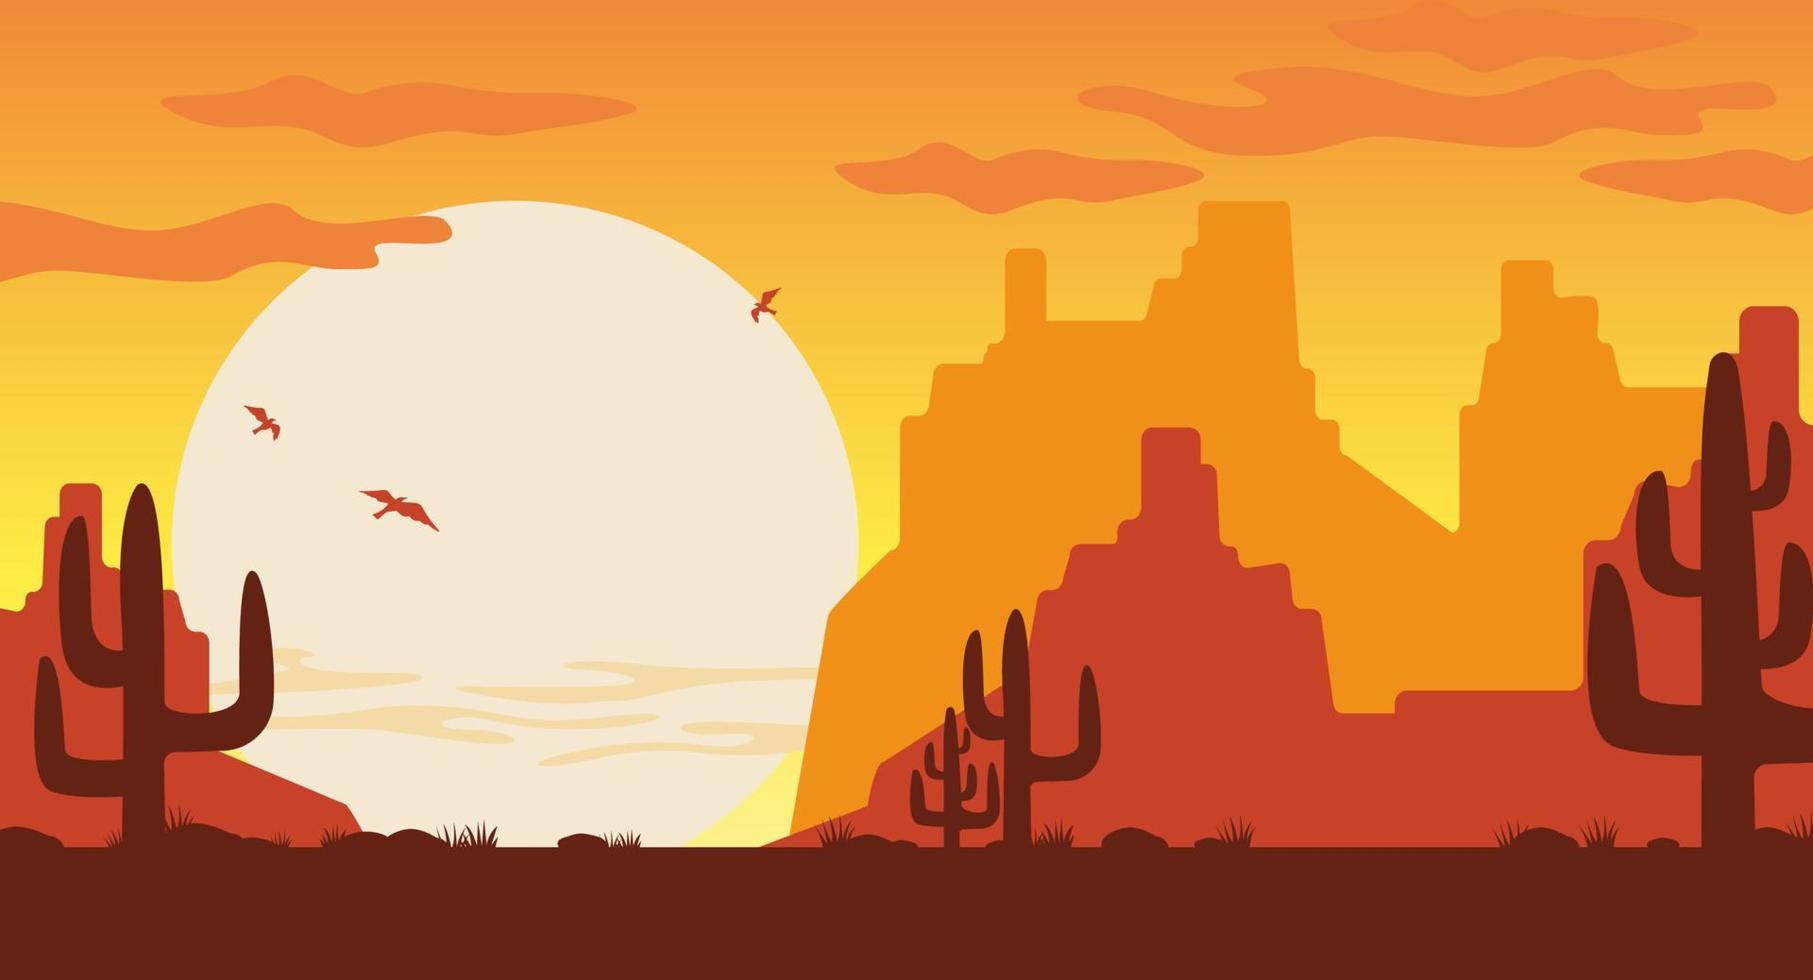 ouest sauvage à l'illustration du coucher du soleil. silhouettes oranges des montagnes de l'arizona cactus bruns. vecteur